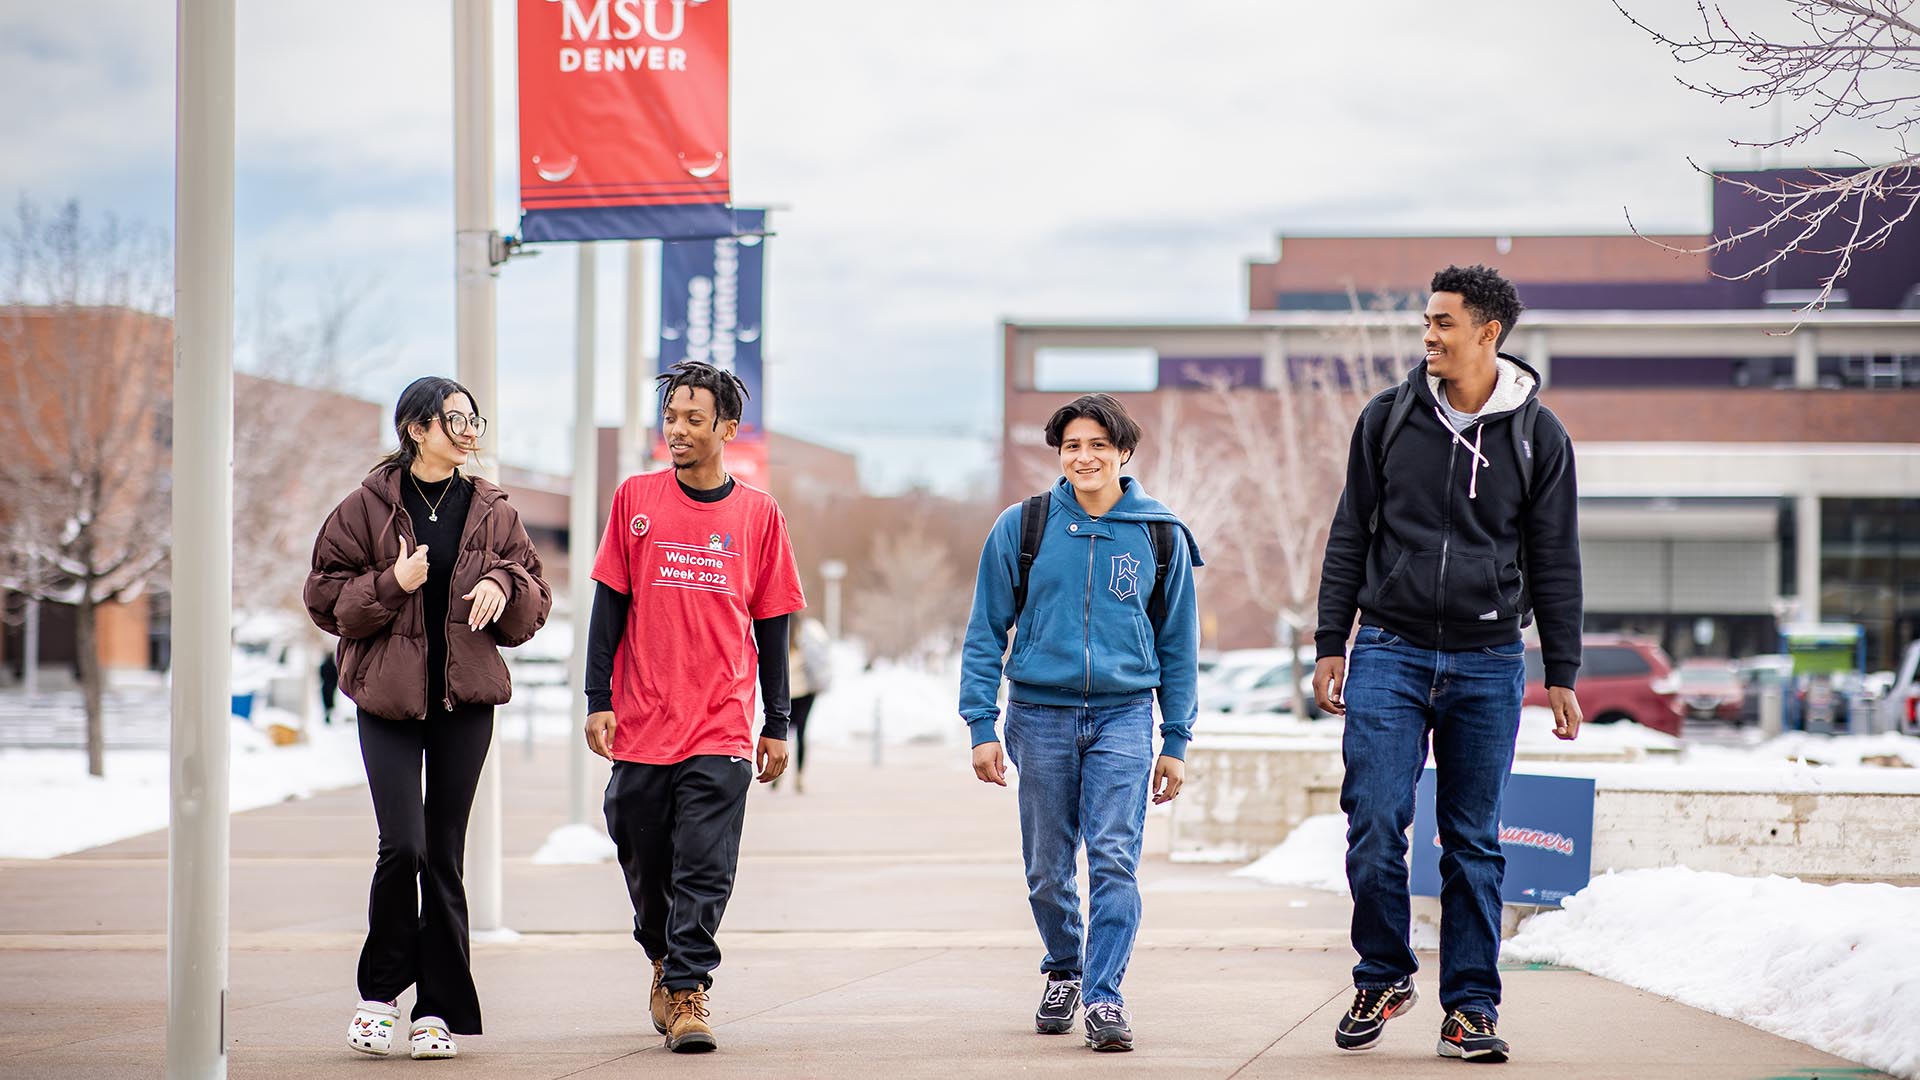 Student-success programs get a boost at MSU Denver